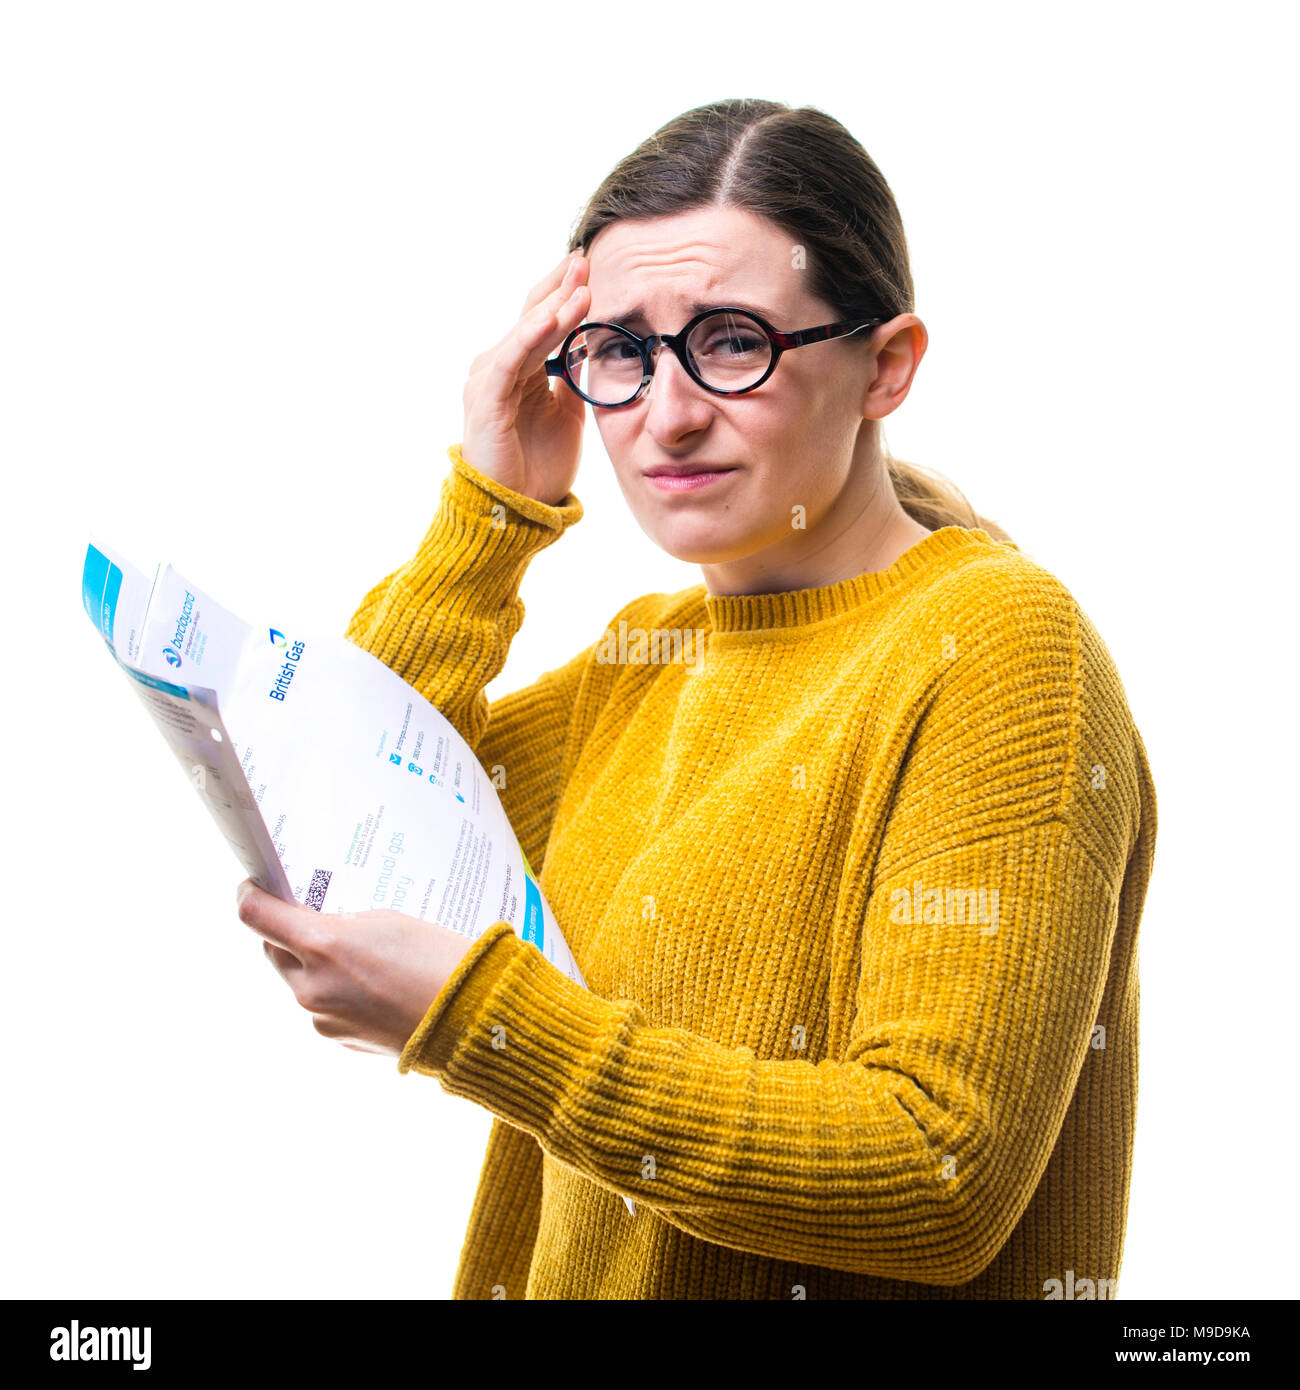 Eine junge Kaukasier Frau Mädchen mit einem gelben Pullover Pullover, besorgt über das Zahlen von inländischen Stromversorgung Rechnungen, vor einem weißen Hintergrund, Großbritannien Stockfoto